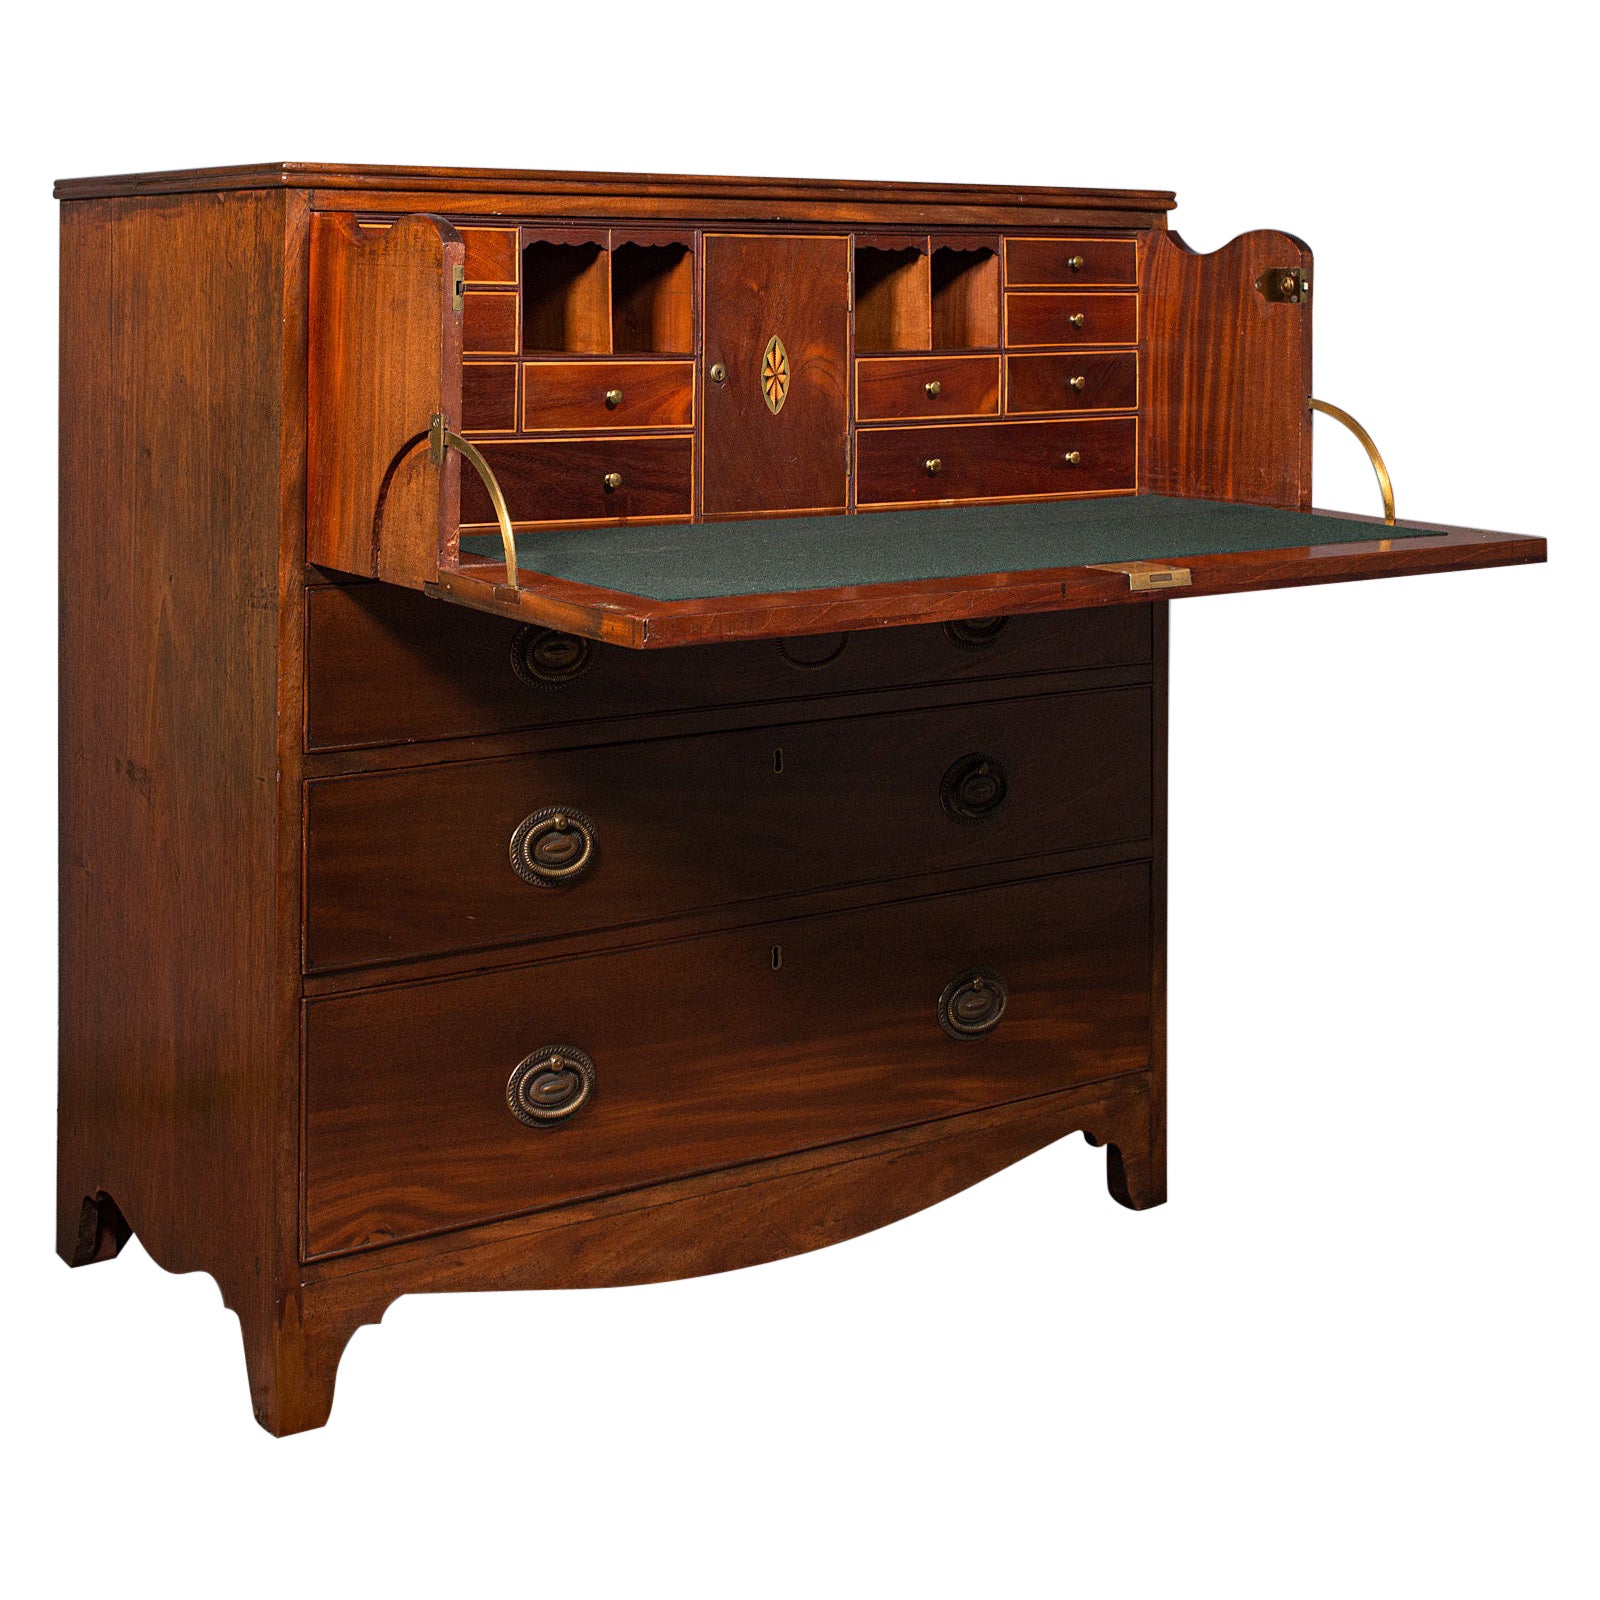 Antique Secretaire Cabinet, English, Chest of Drawers, Bureau, Desk, Georgian